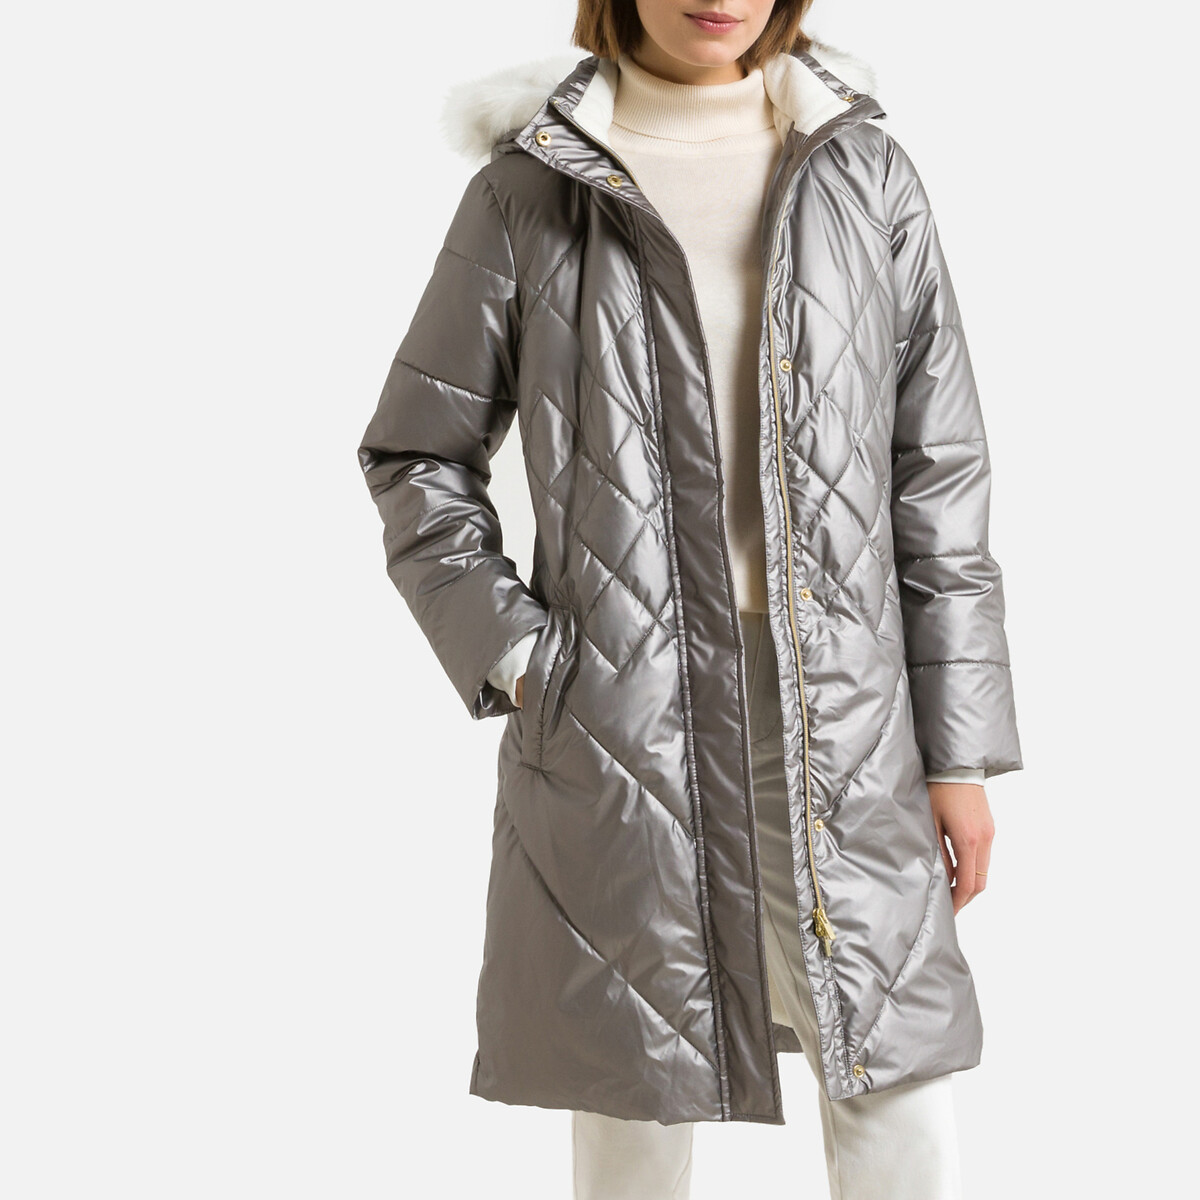 Куртка Средней длины с застежкой на молнию зимняя модель 40 (FR) - 46 (RUS) серебристый LaRedoute, размер 40 (FR) - 46 (RUS)